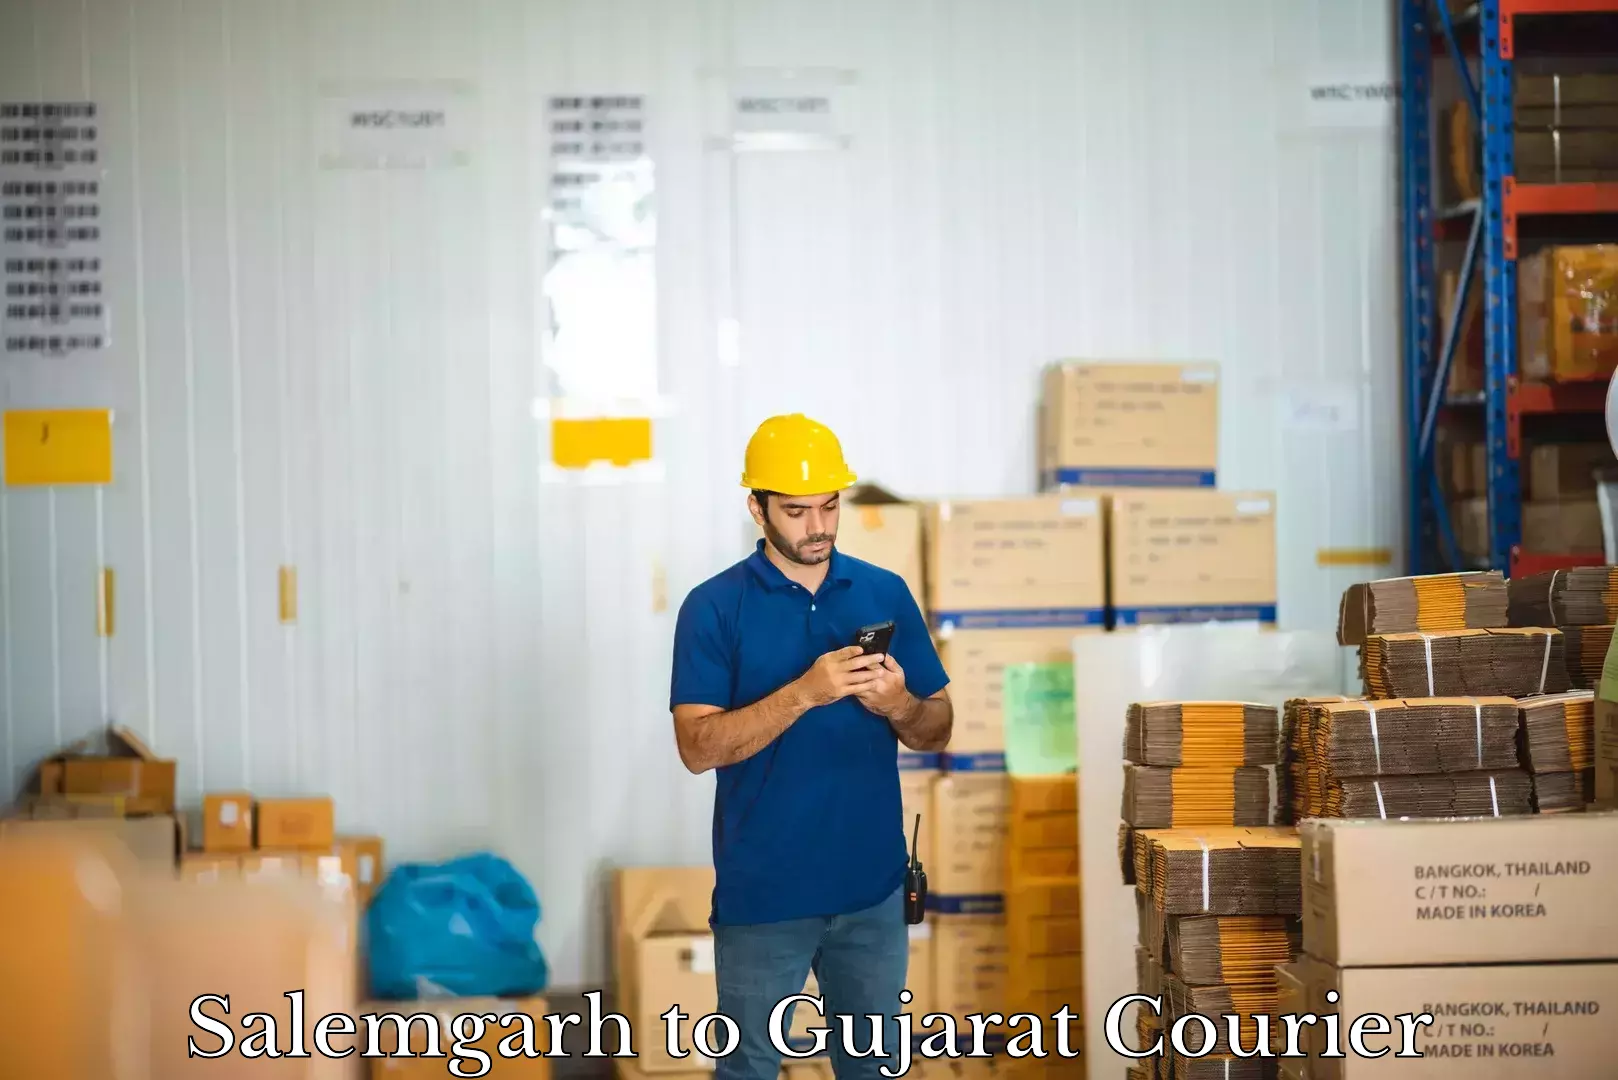 Baggage transport innovation Salemgarh to Gujarat